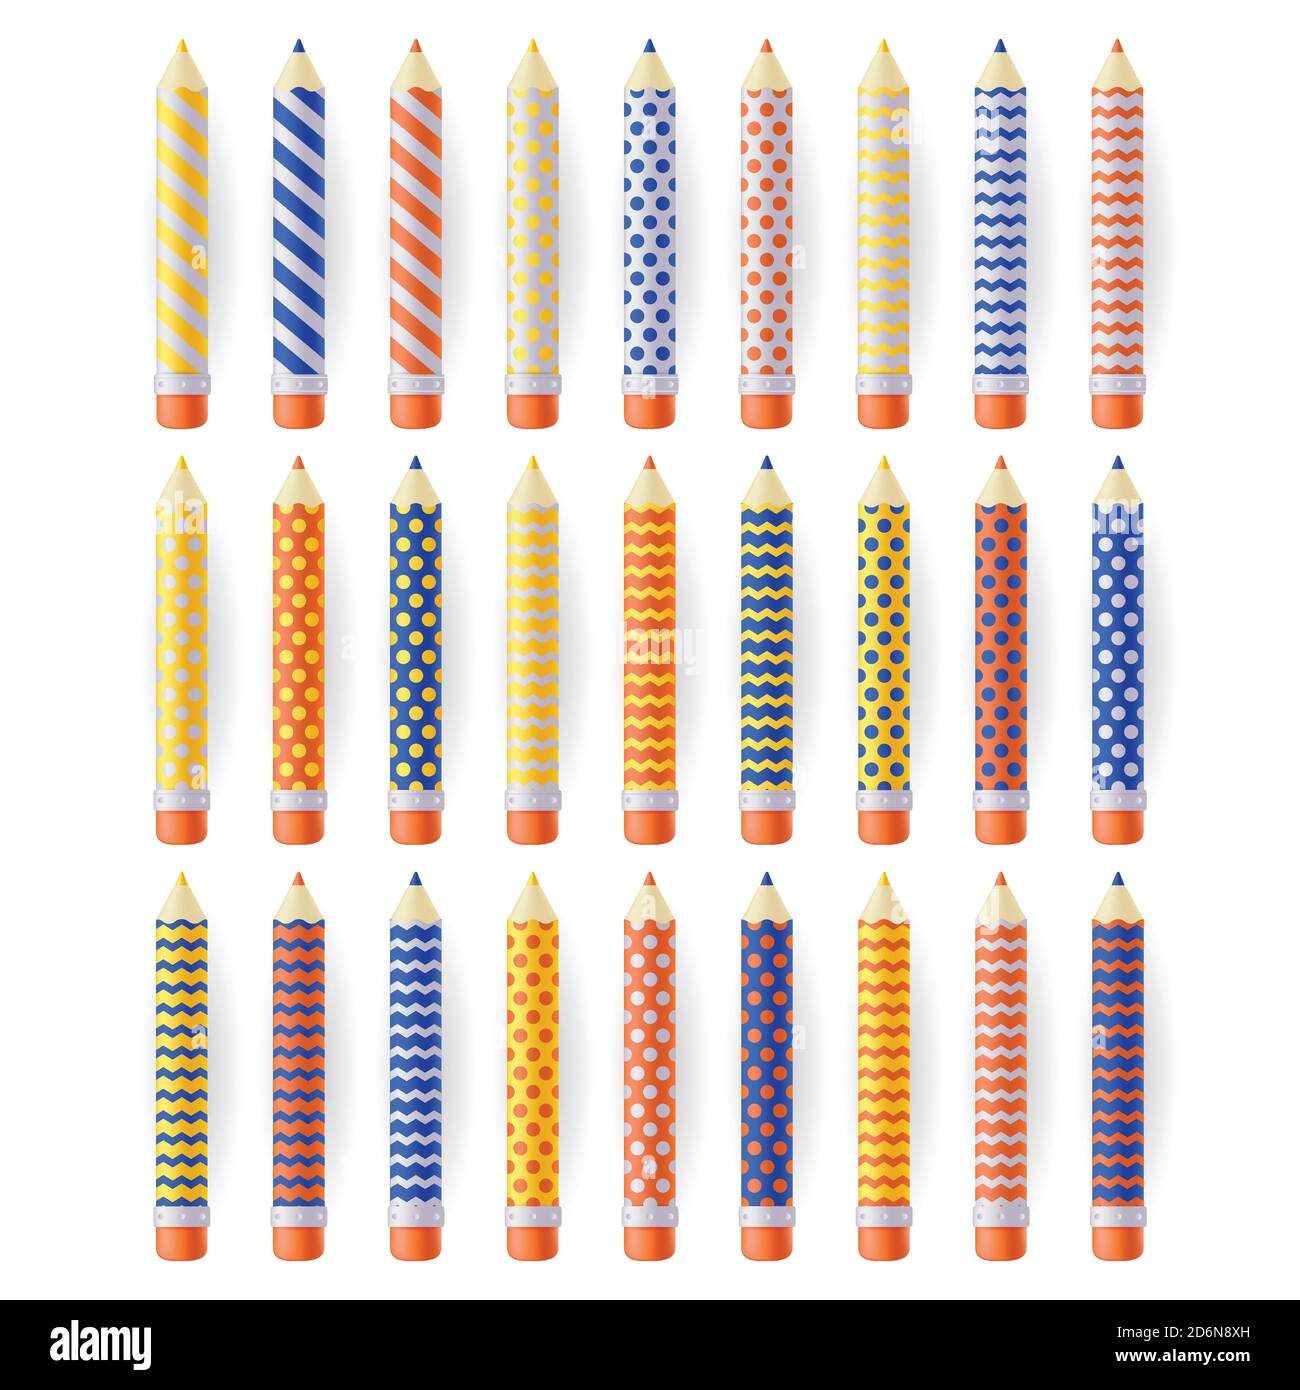 Mehrfarbige realistische Bleistifte mit geometrischen Mustern, isoliert auf weißem Hintergrund. Schule Bildung Kunst liefert set. Vektor-3d-Illustration. Stock Vektor